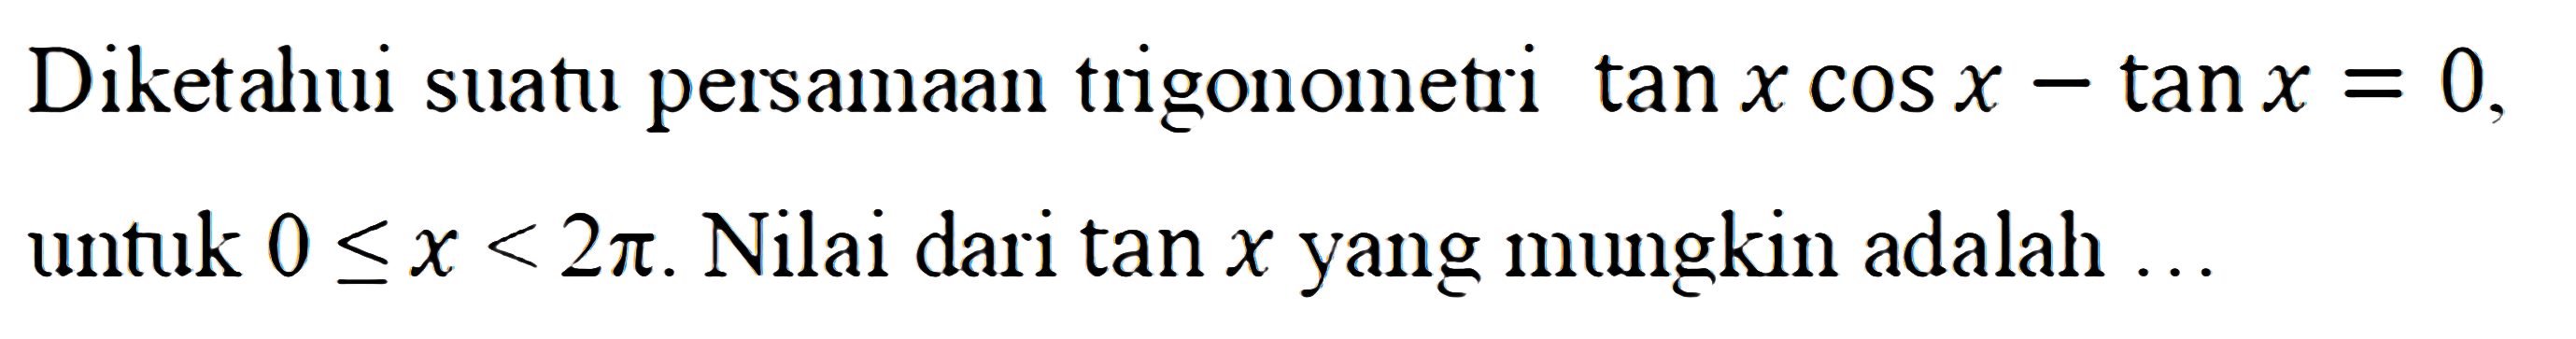 Diketahui suatu persamaan trigonometri tan x cos x-tanx=0. Untuk 0<=x<=2pi. Nilai dari tanx mungkin adalah...